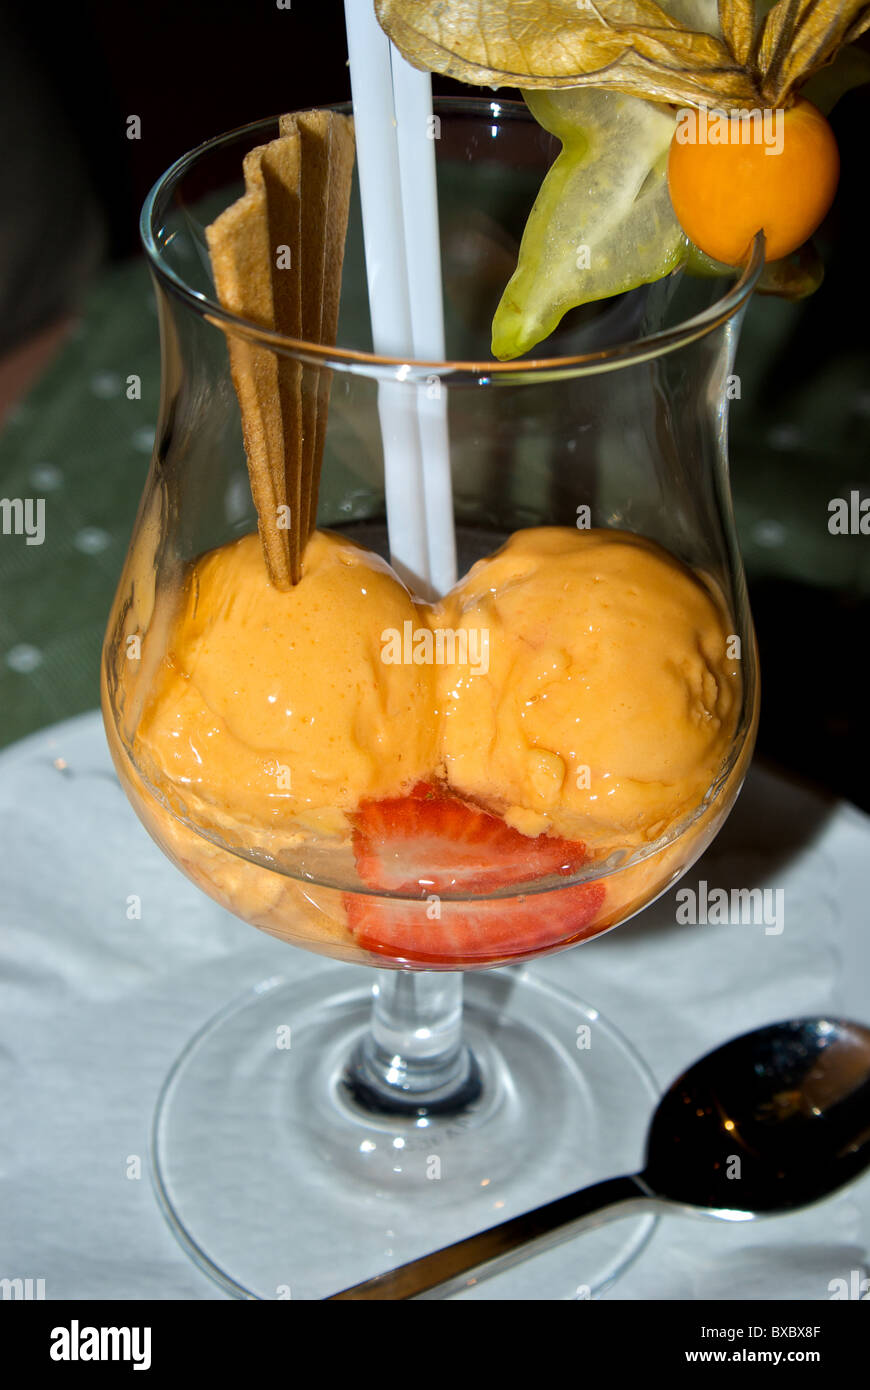 Congelati arancione sorbetto di frutta ricoperti in modo chiaro la grappa liquore dolce snifter calice con cialda croccante biscotto fragola guarnire Foto Stock